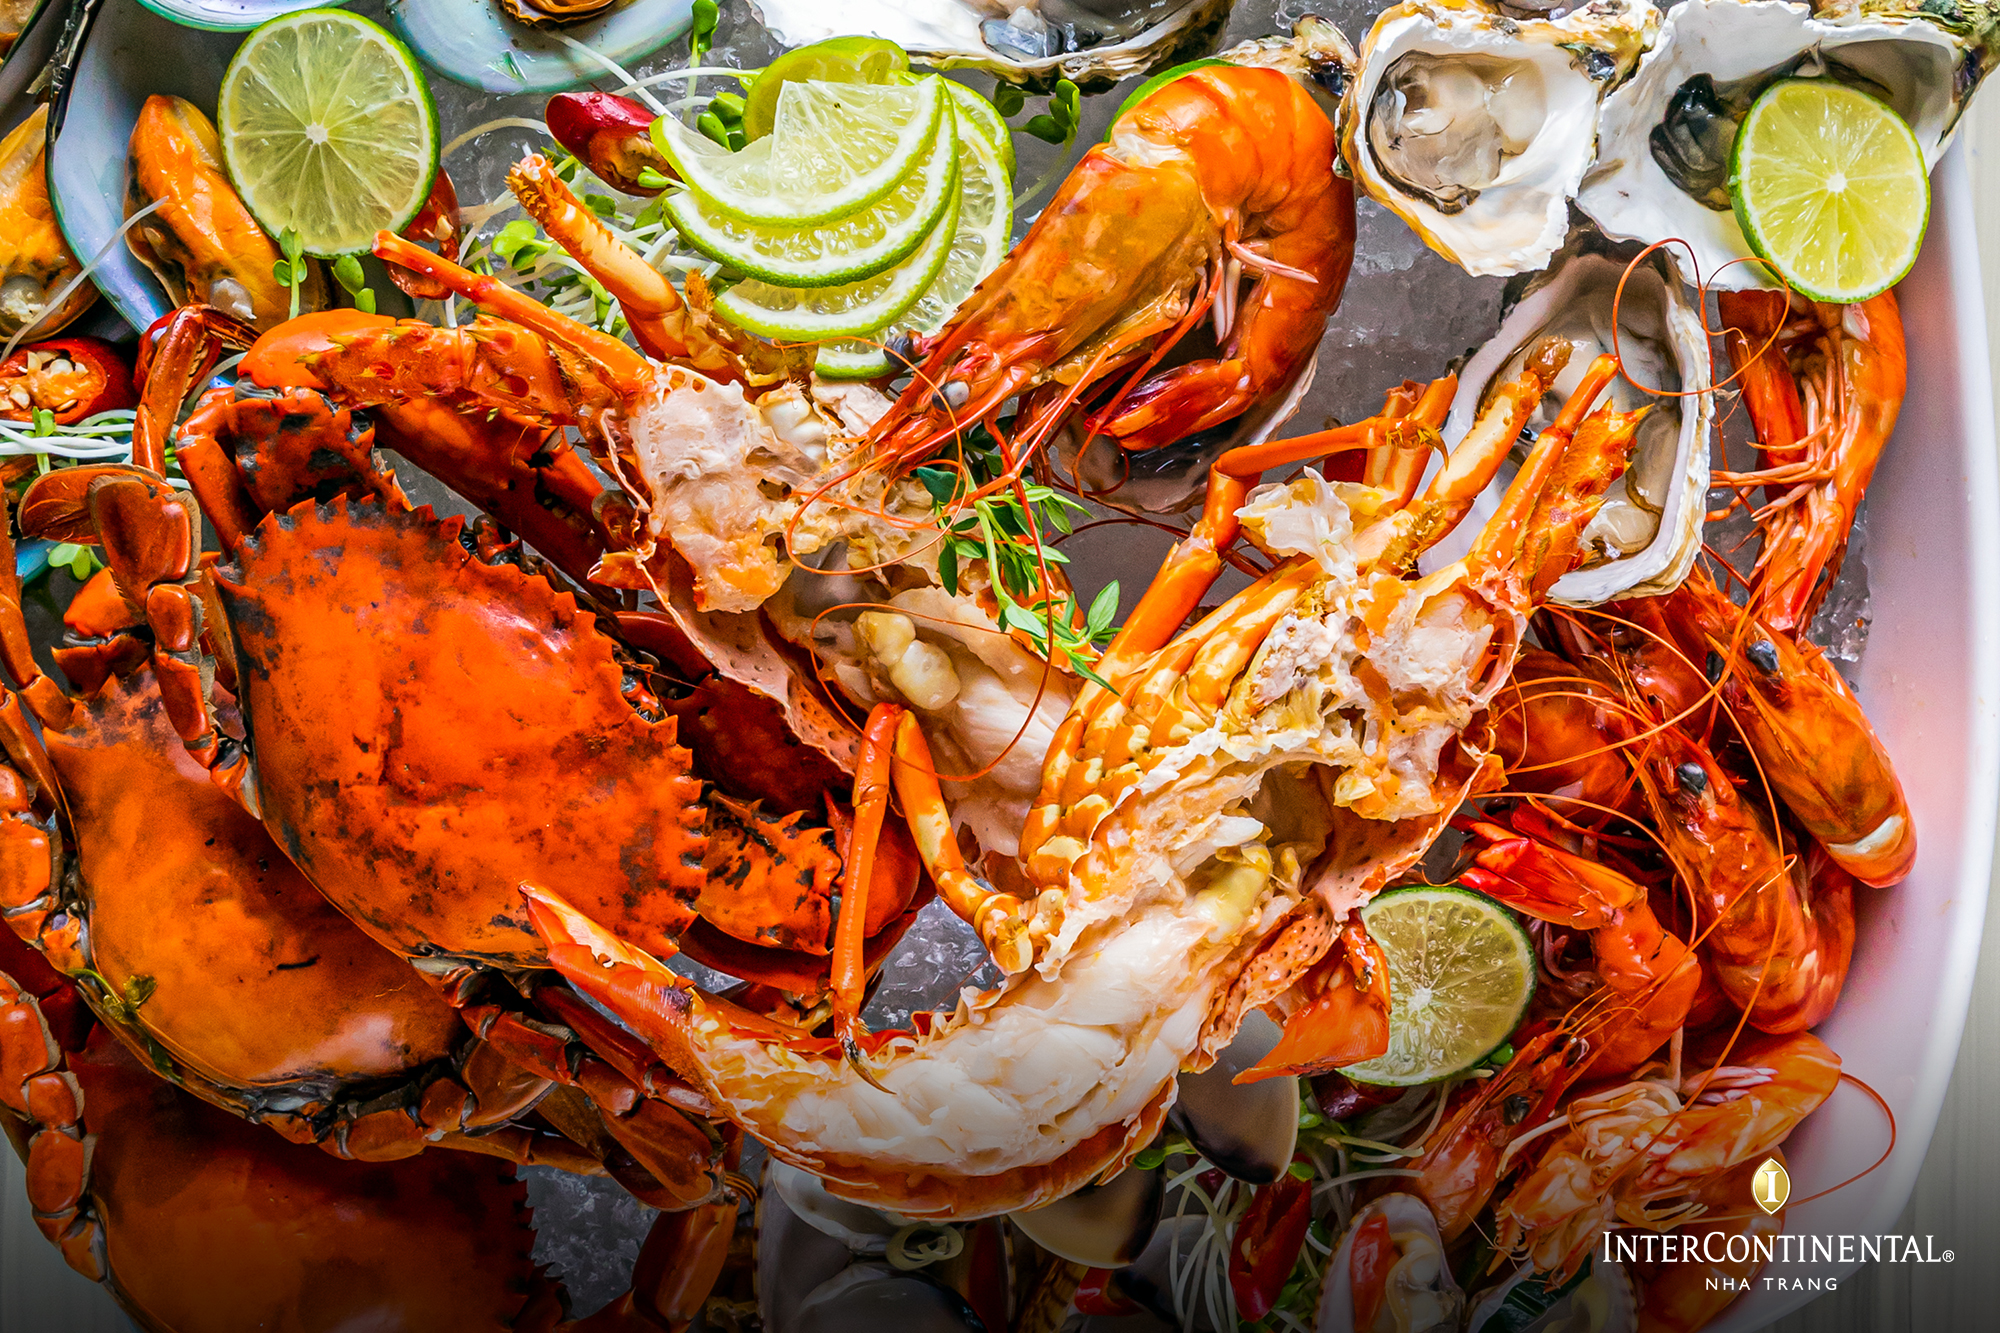  Làm thế nào để chọn được những quán hải sản ngon ở Nha Trang?
